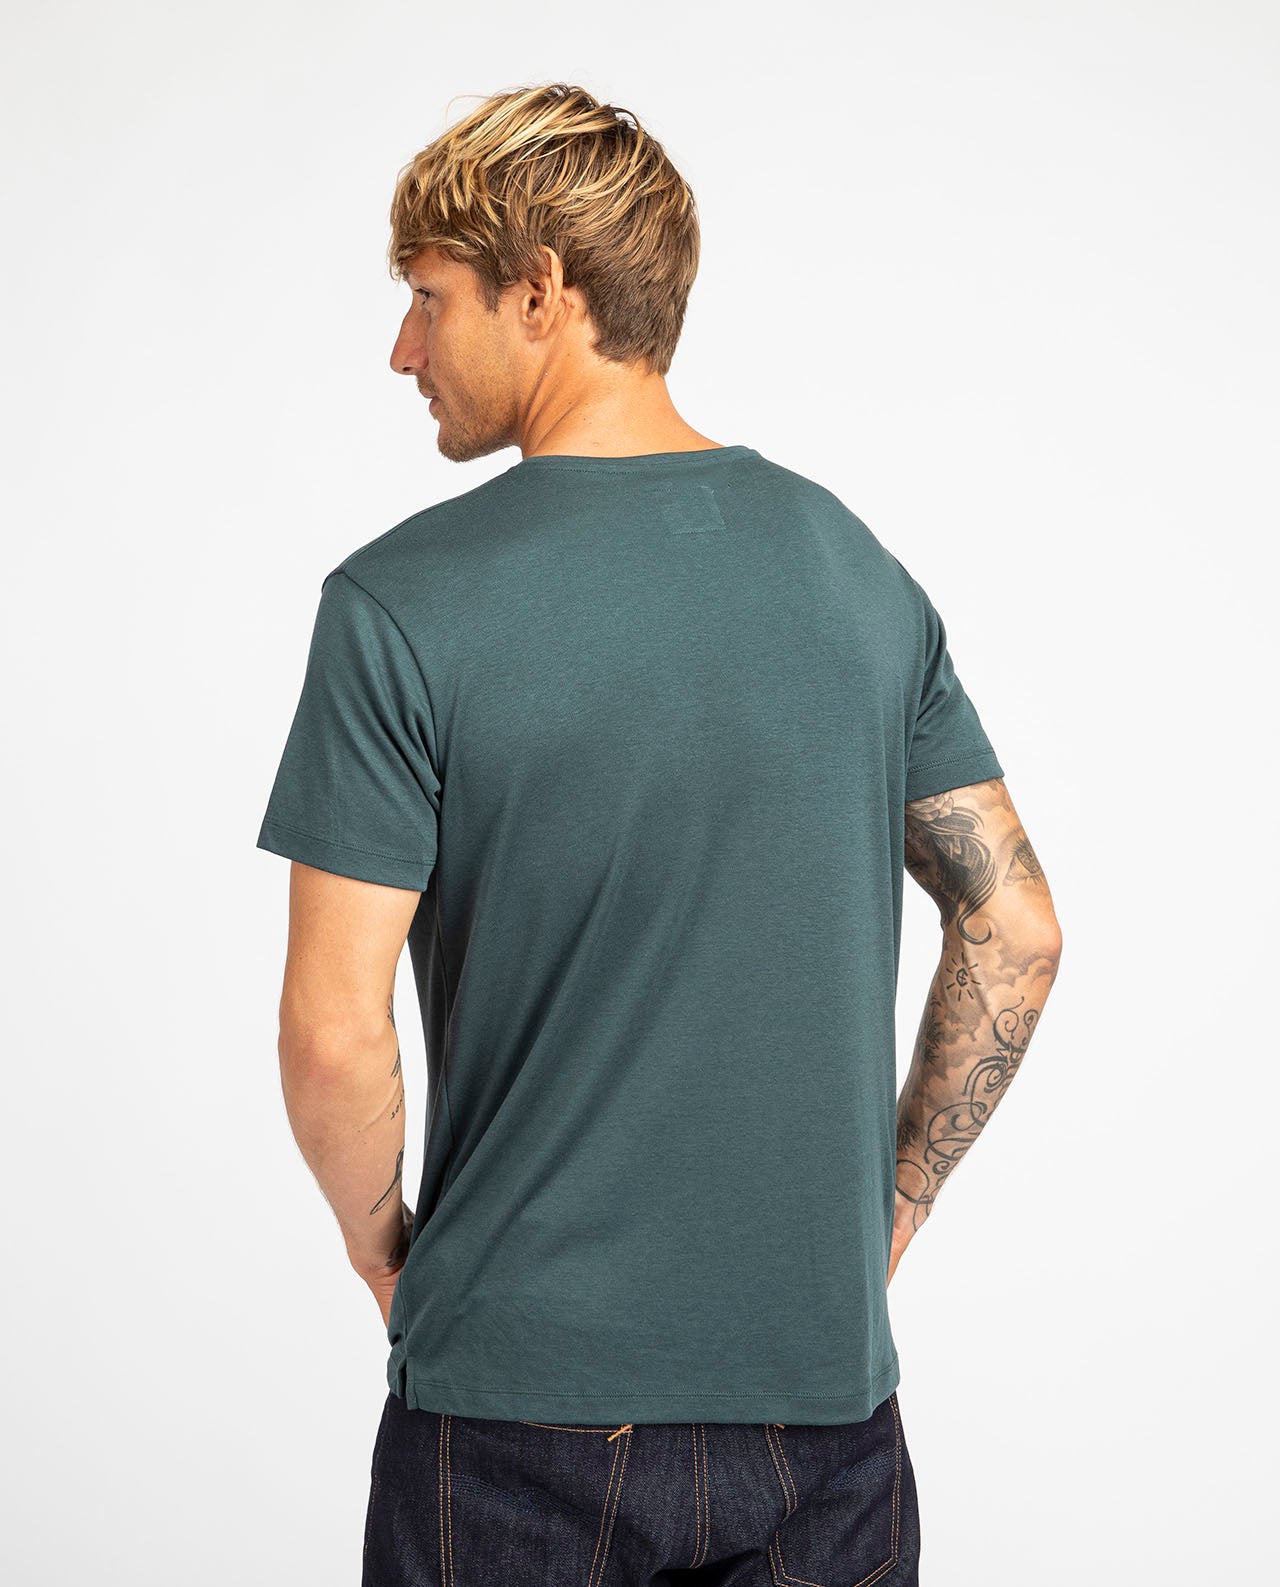 marché commun noyoco t-shirt homme manches courtes lyocell coton biologique éco-responsable éthique vert bouteille